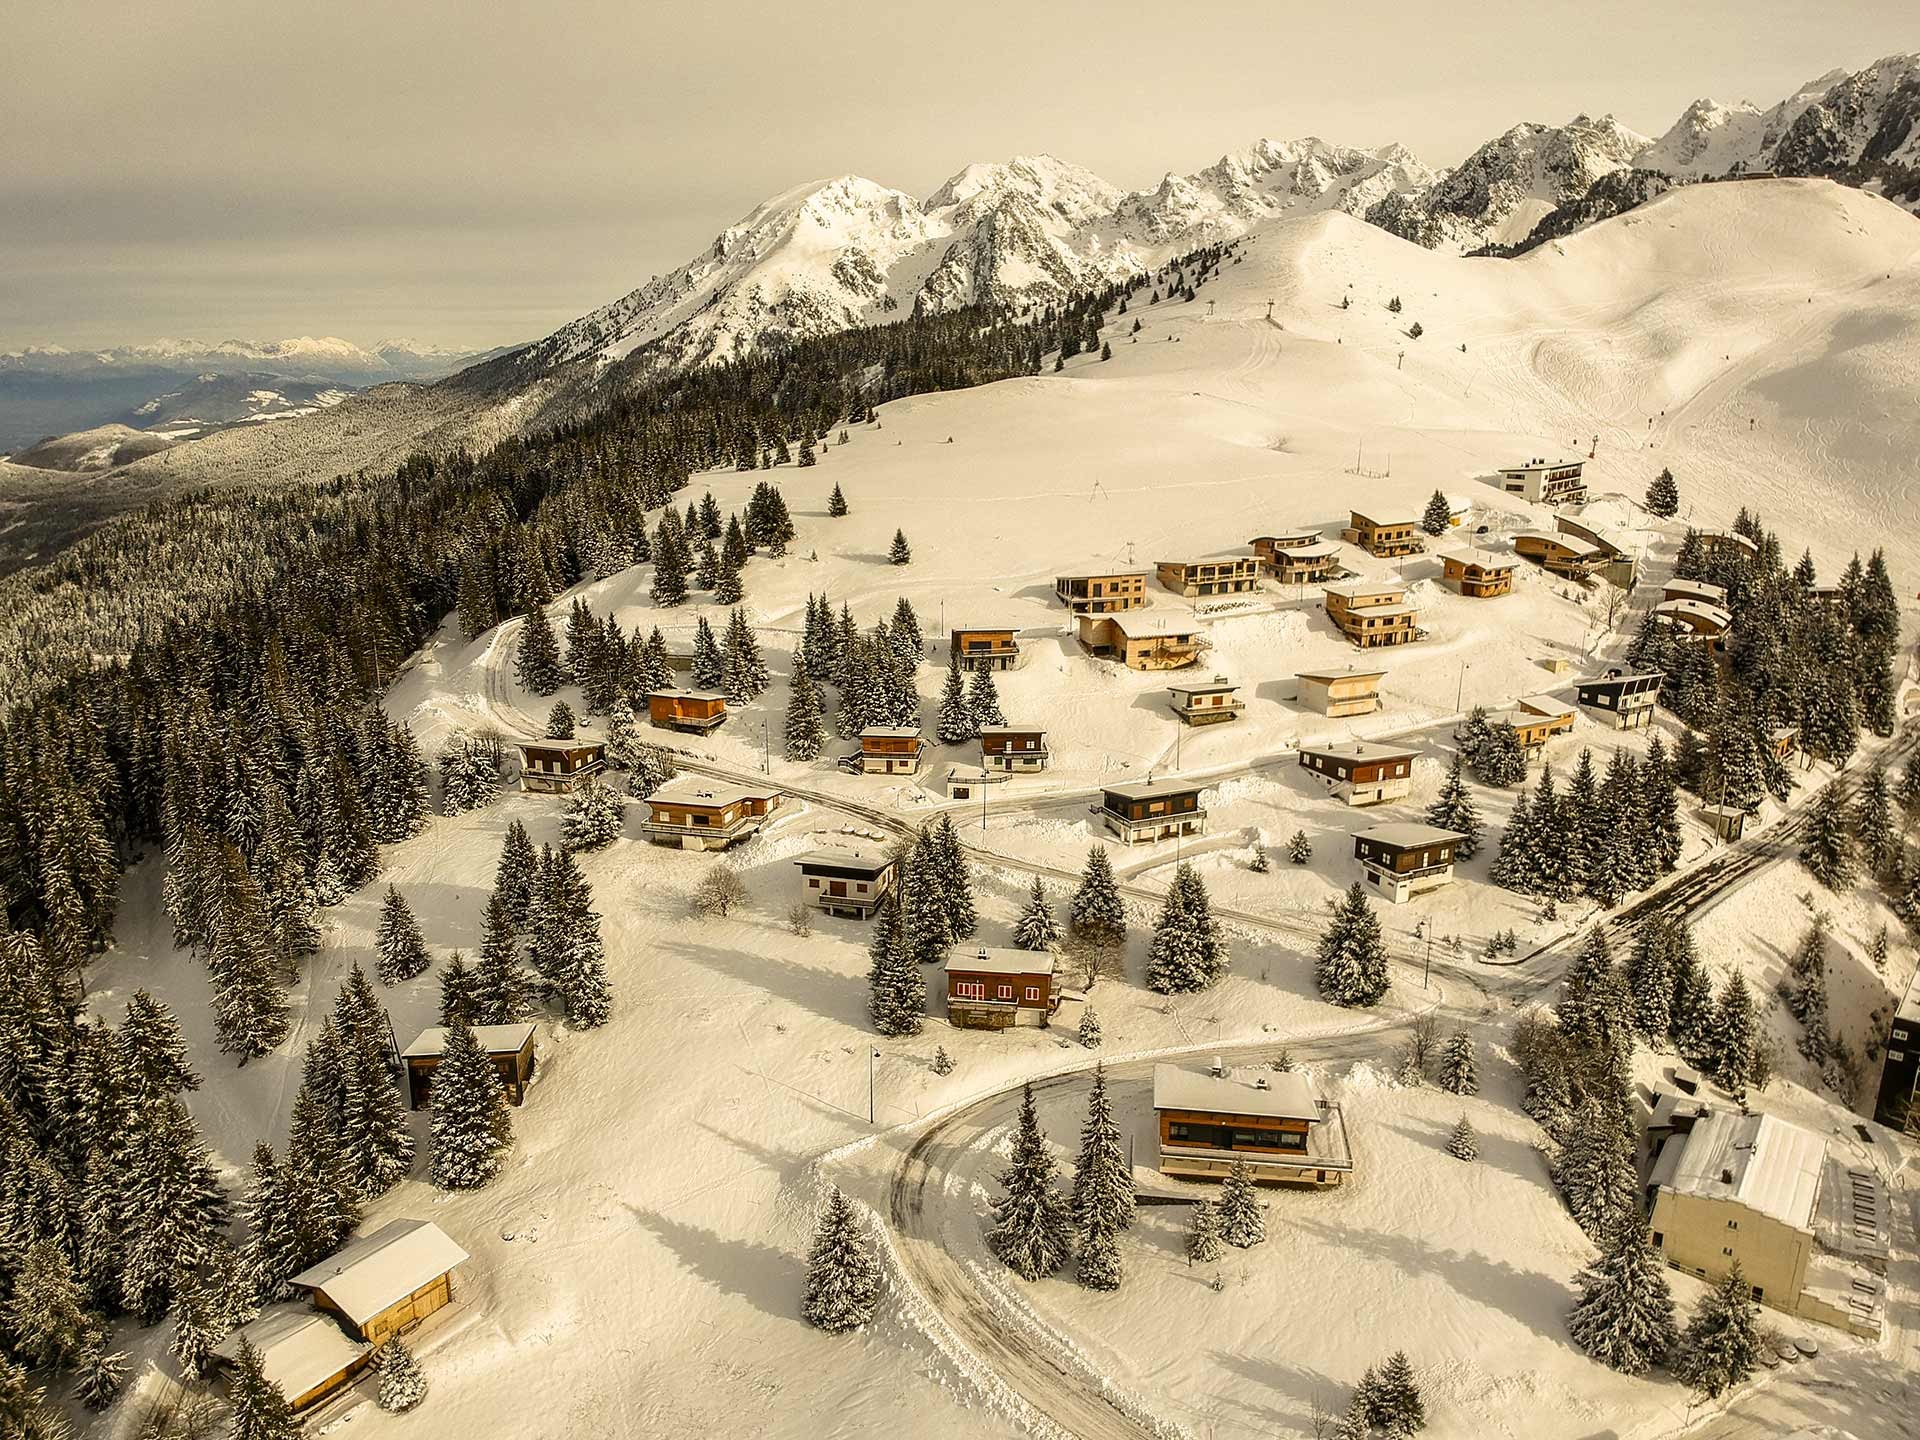 Chamrousse Réservation location hébergement appartement chalet station ski montagne isère alpes france